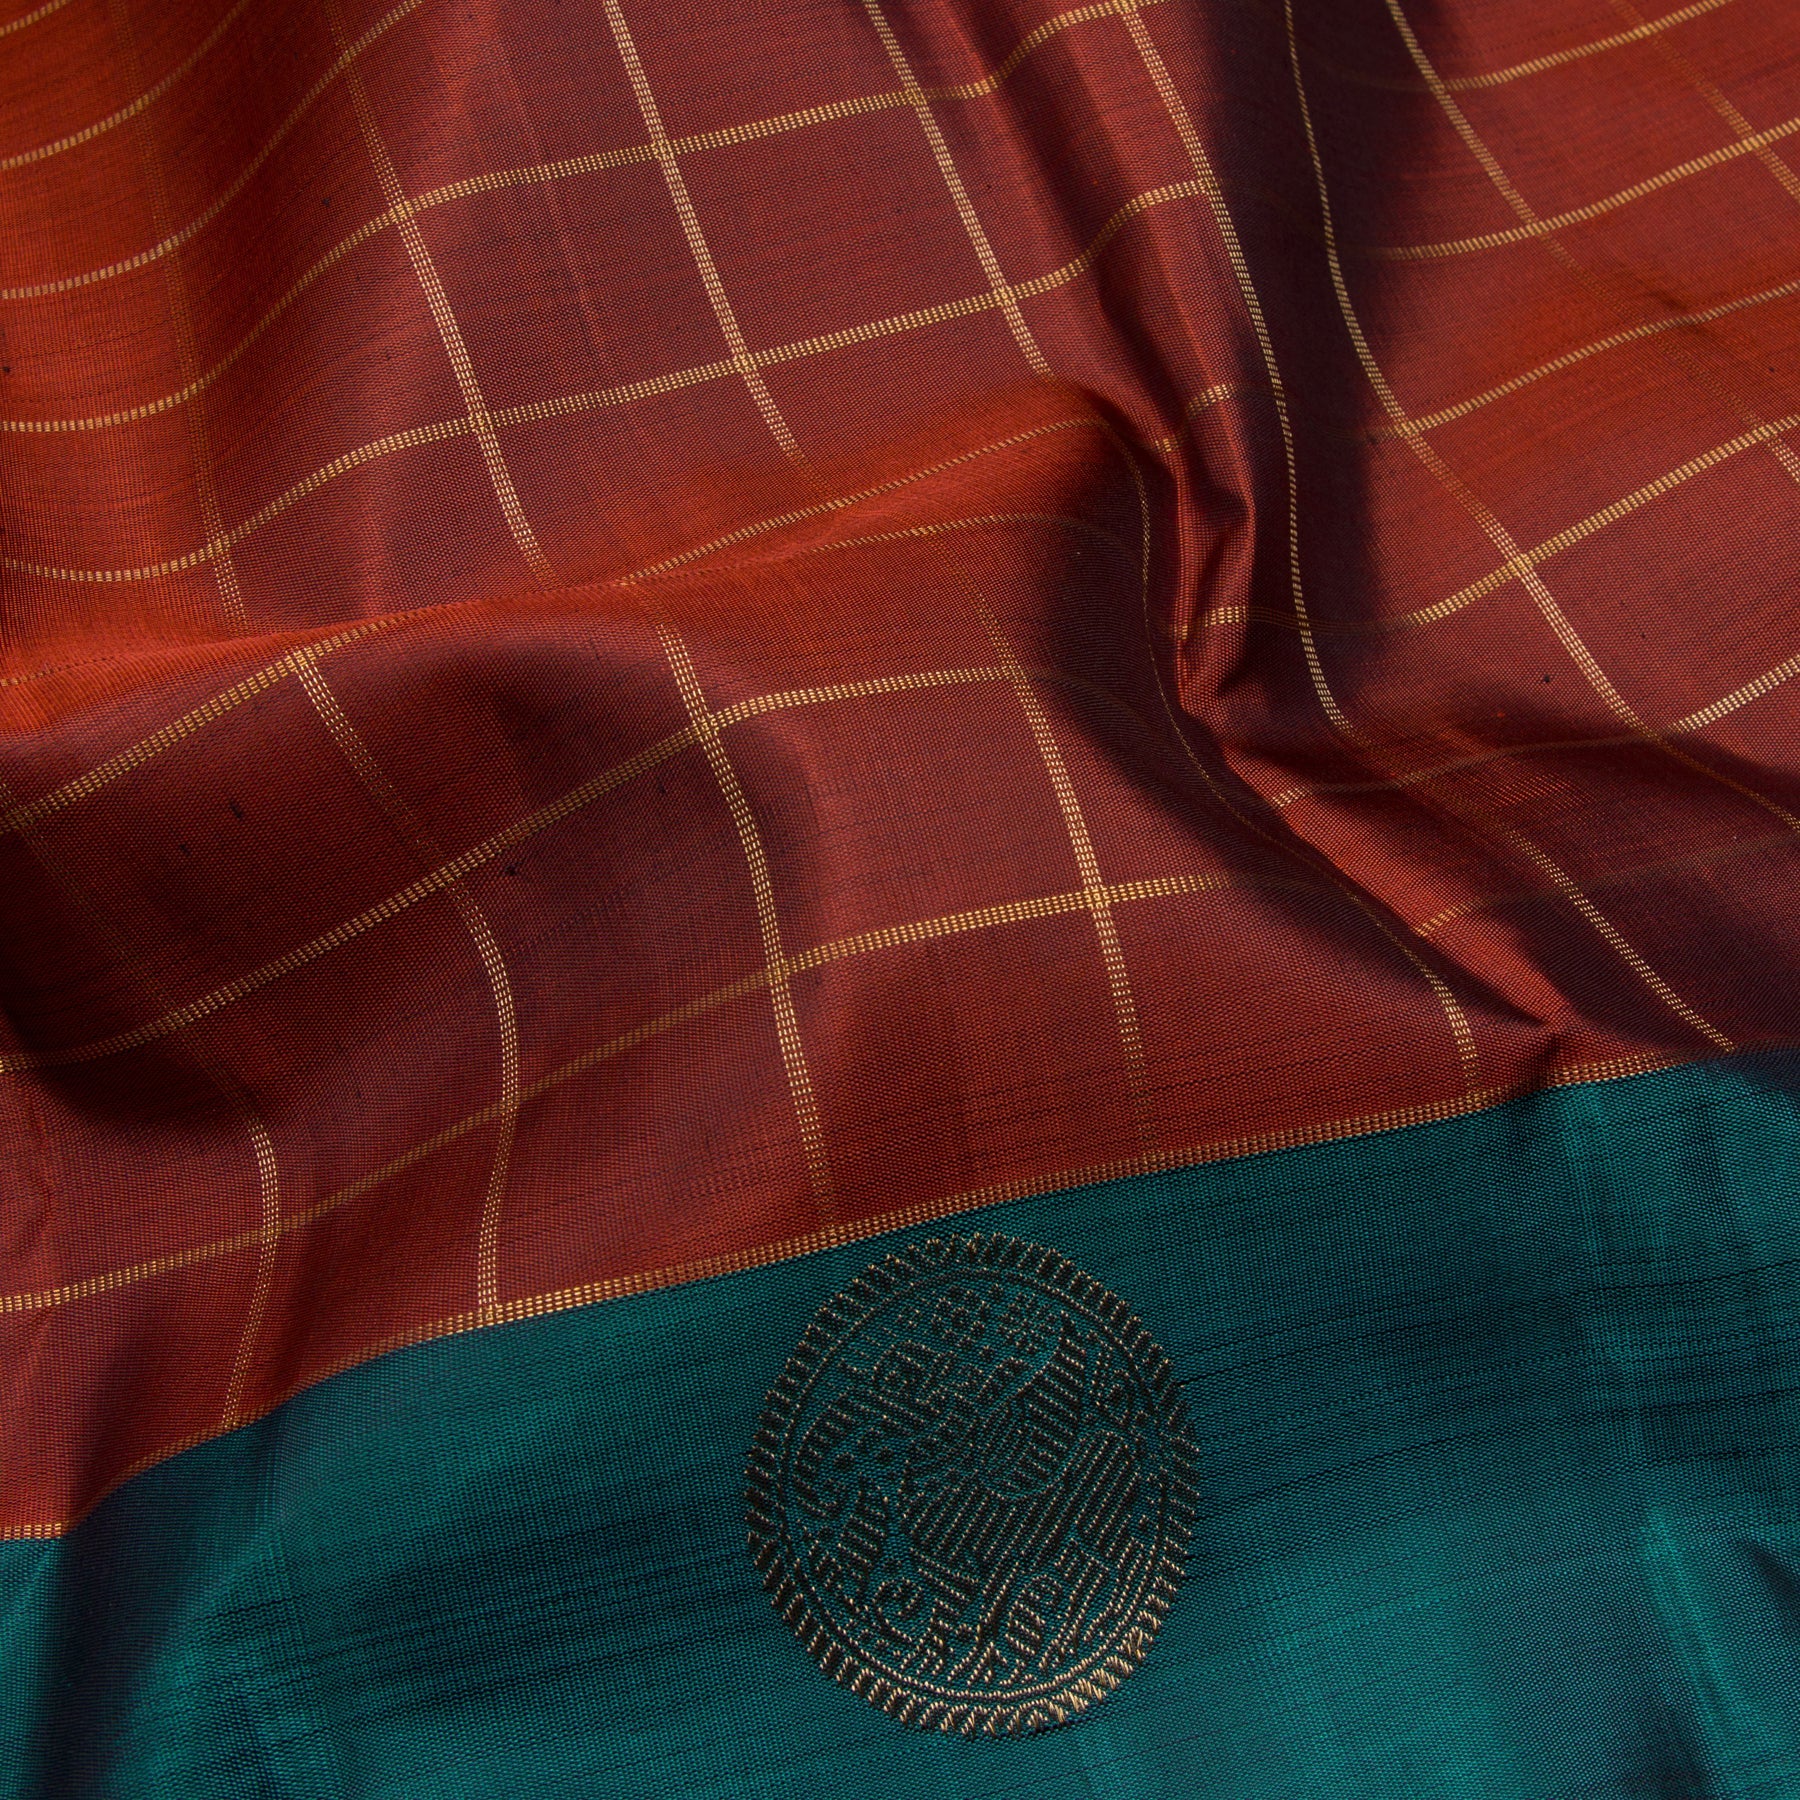 Kanakavalli Kanjivaram Silk Sari 23-595-HS001-09560 - Fabric View